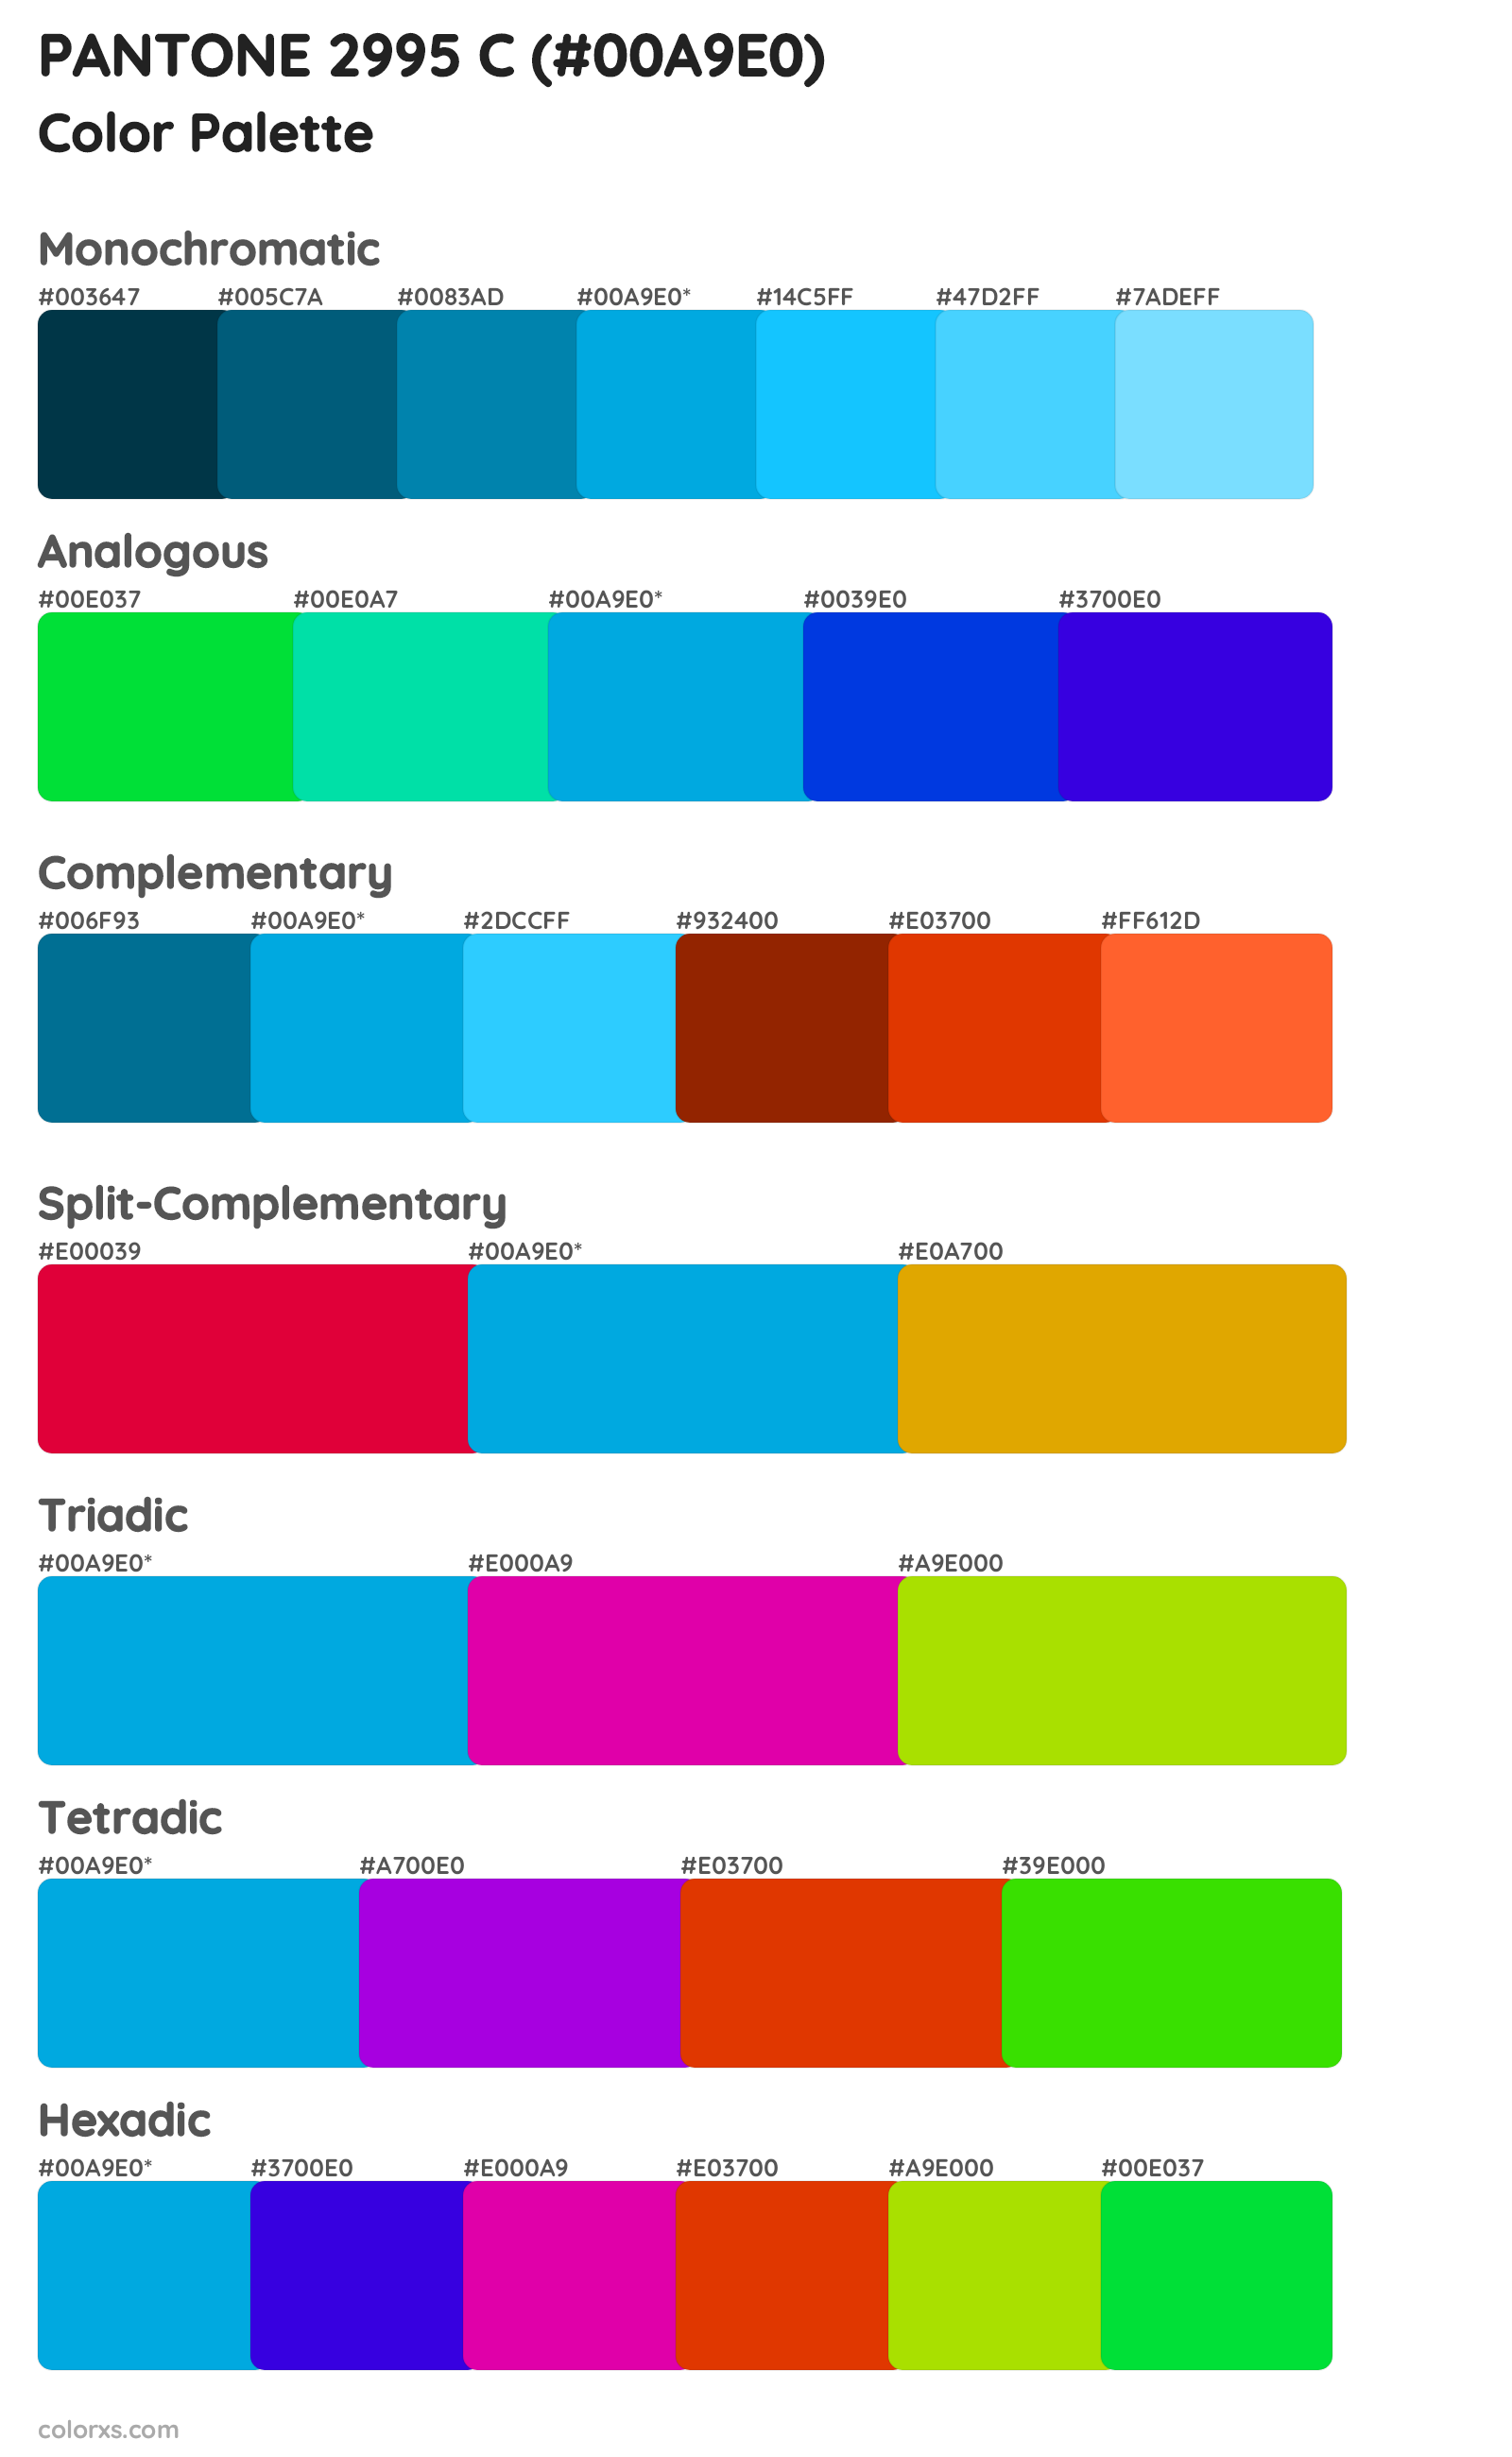 PANTONE 2995 C Color Scheme Palettes